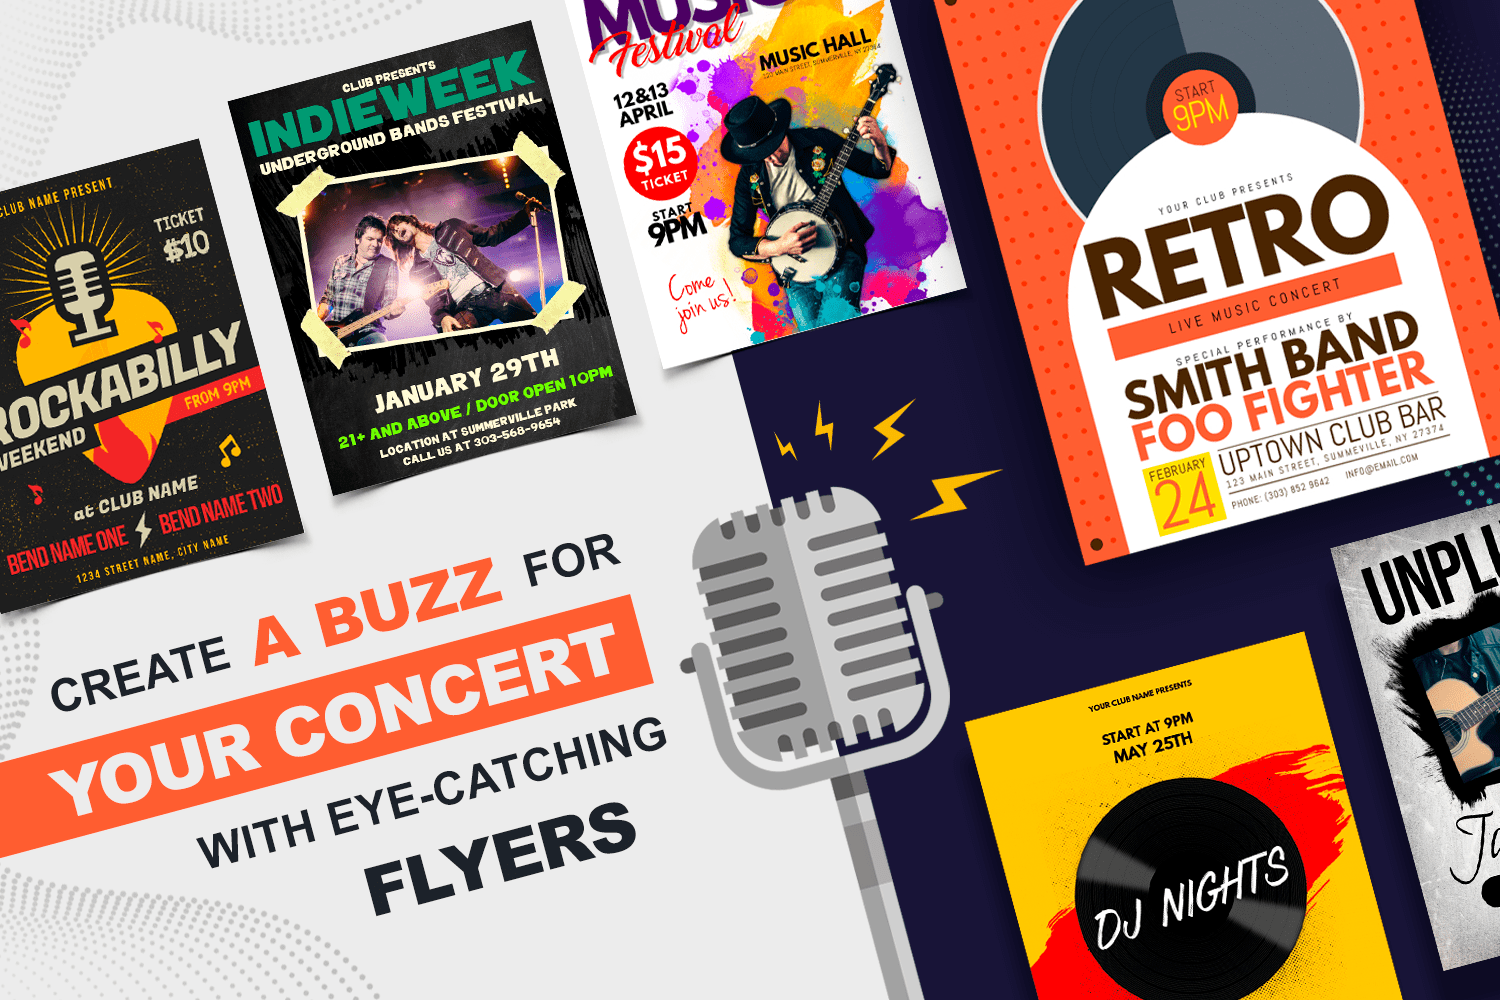 Skab buzz omkring din koncert med iøjnefaldende flyers